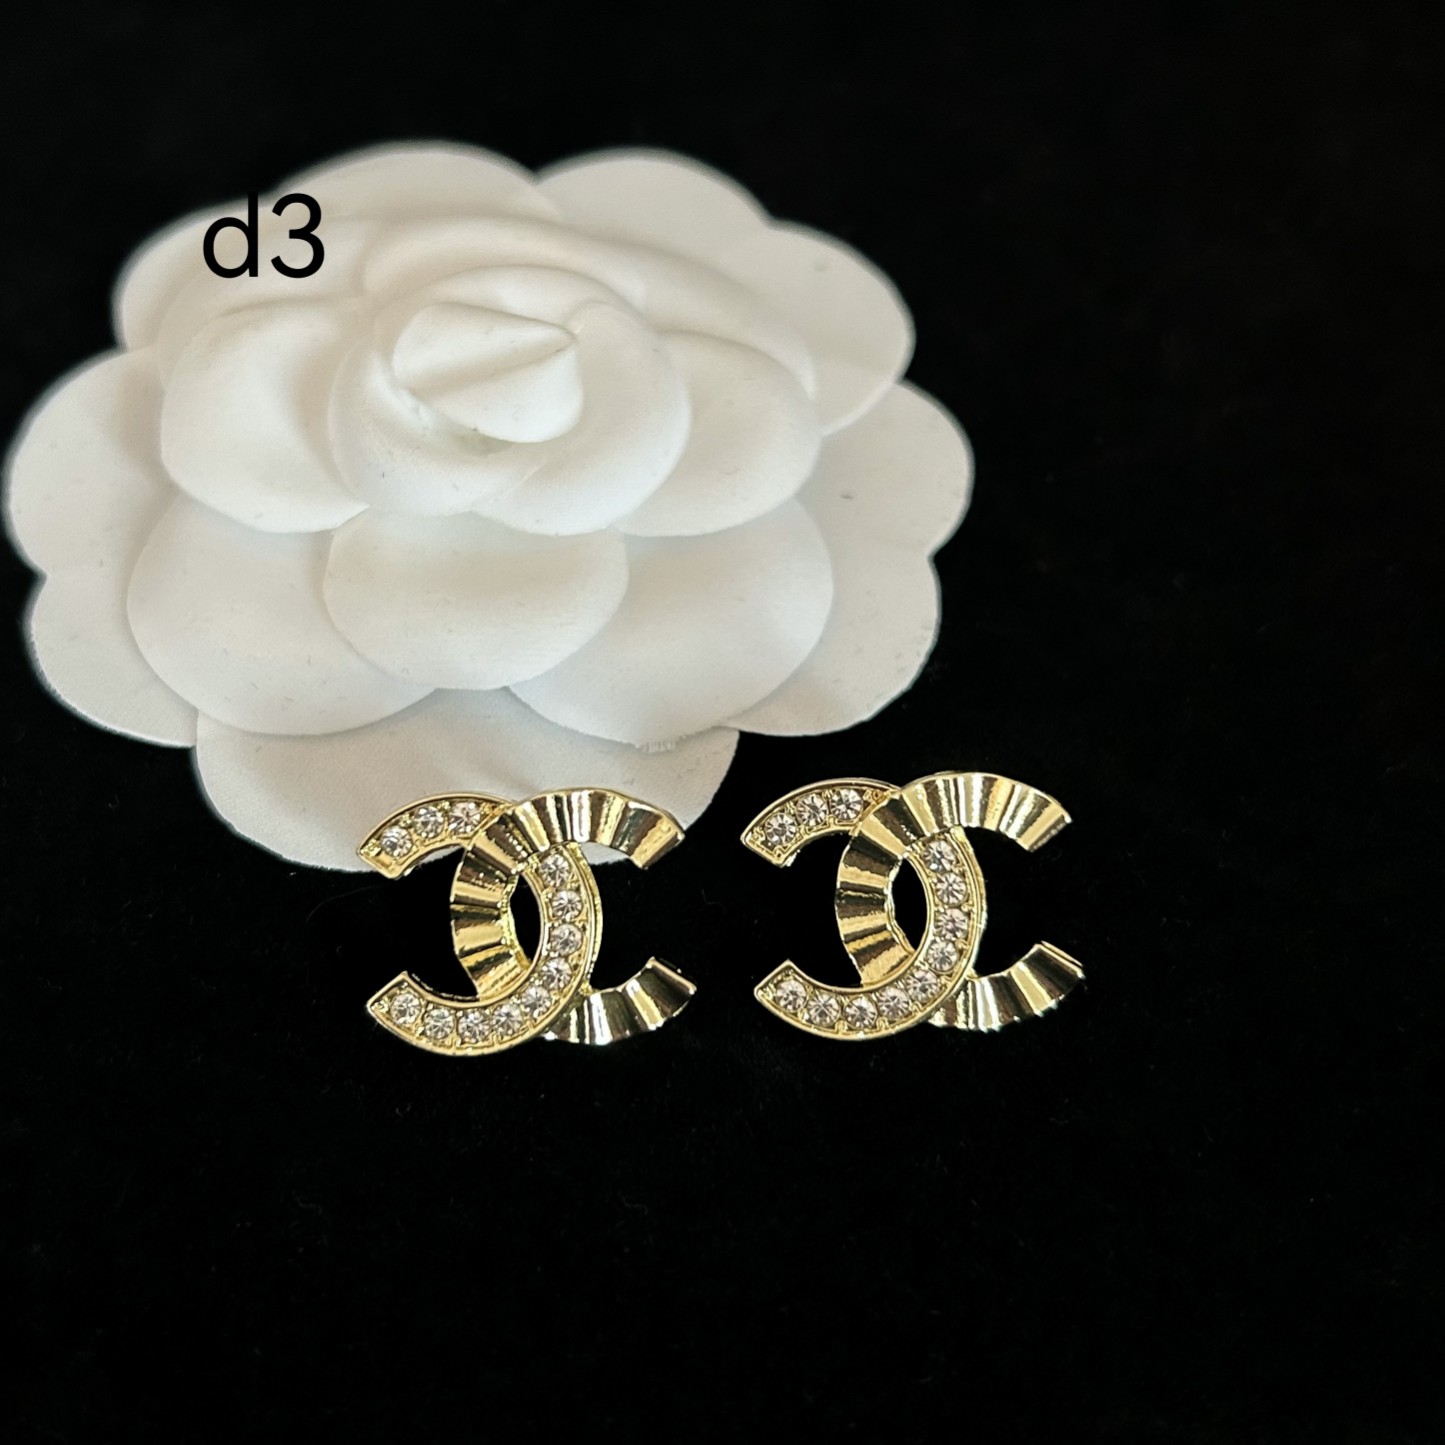 d3 Chanel earrings